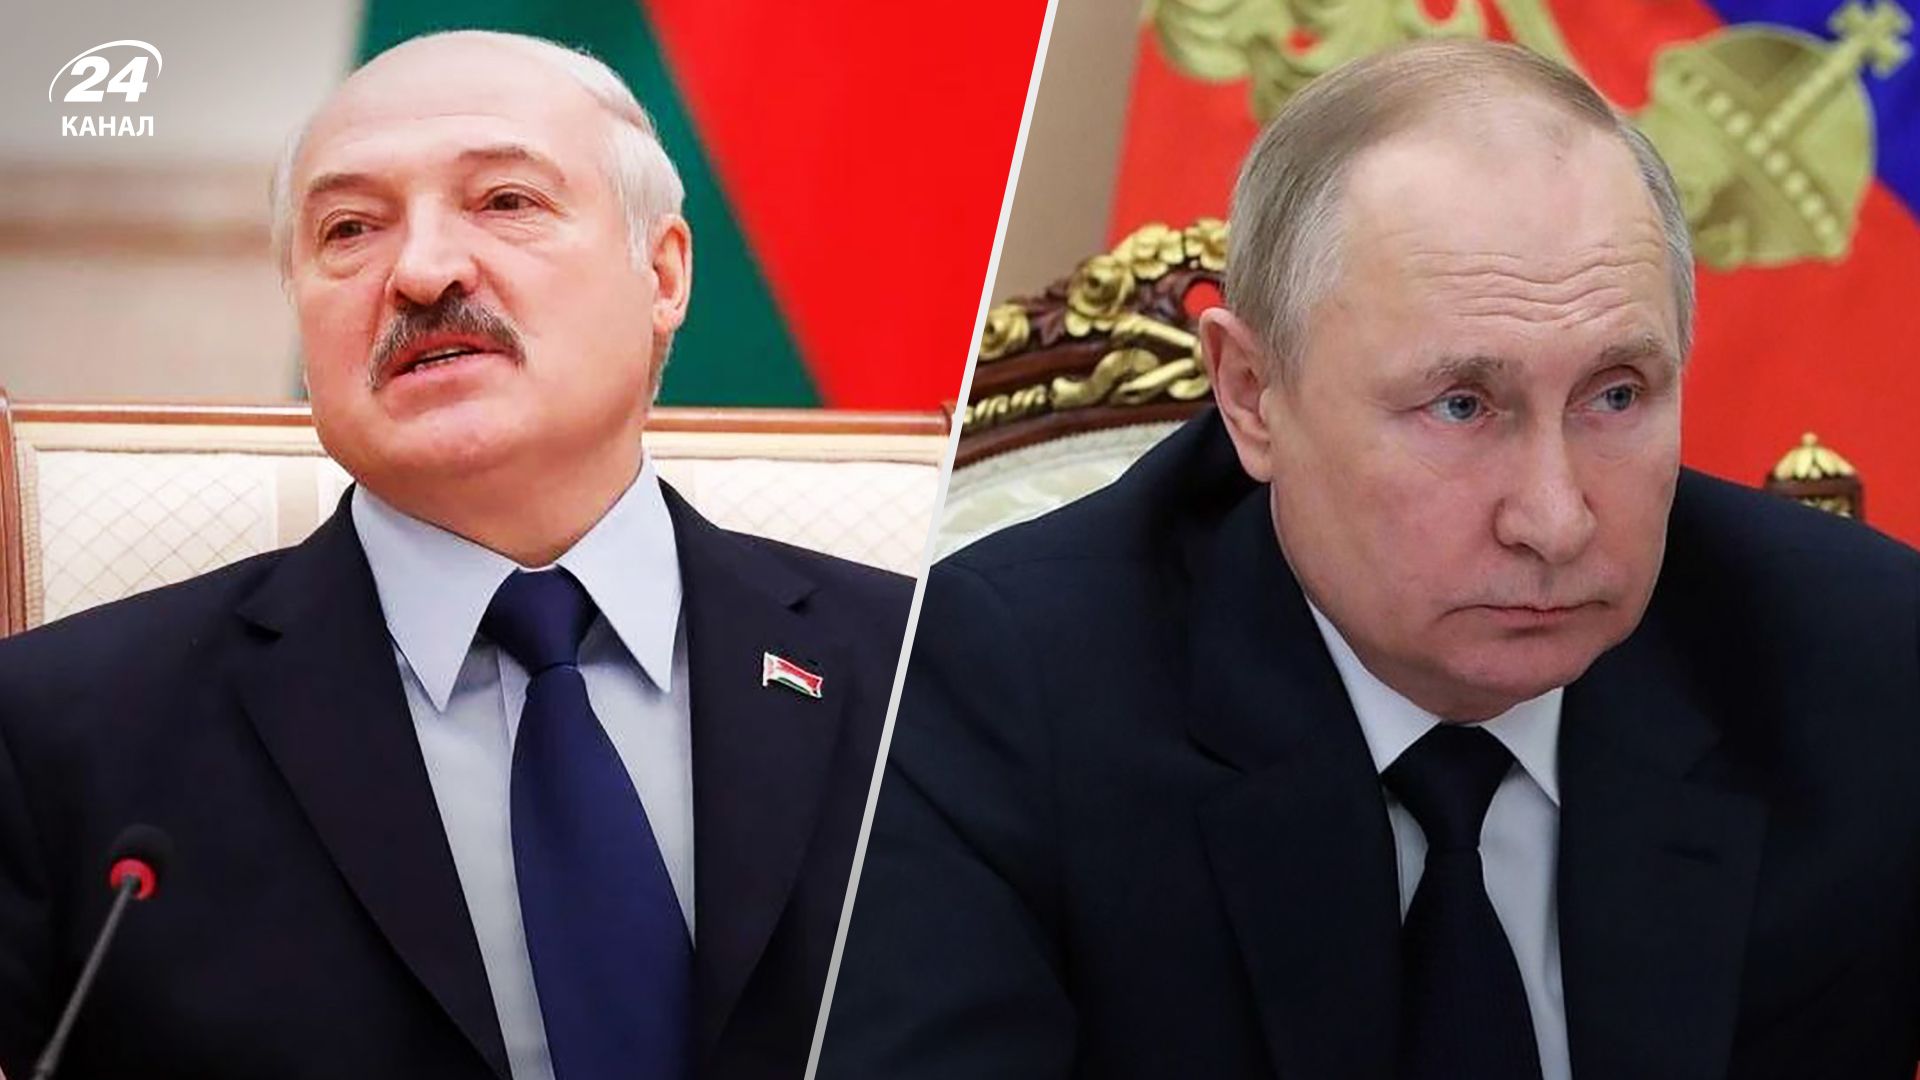 Олександр Лукашенко назвав себе та Володимира Путіна політиками, які відходять